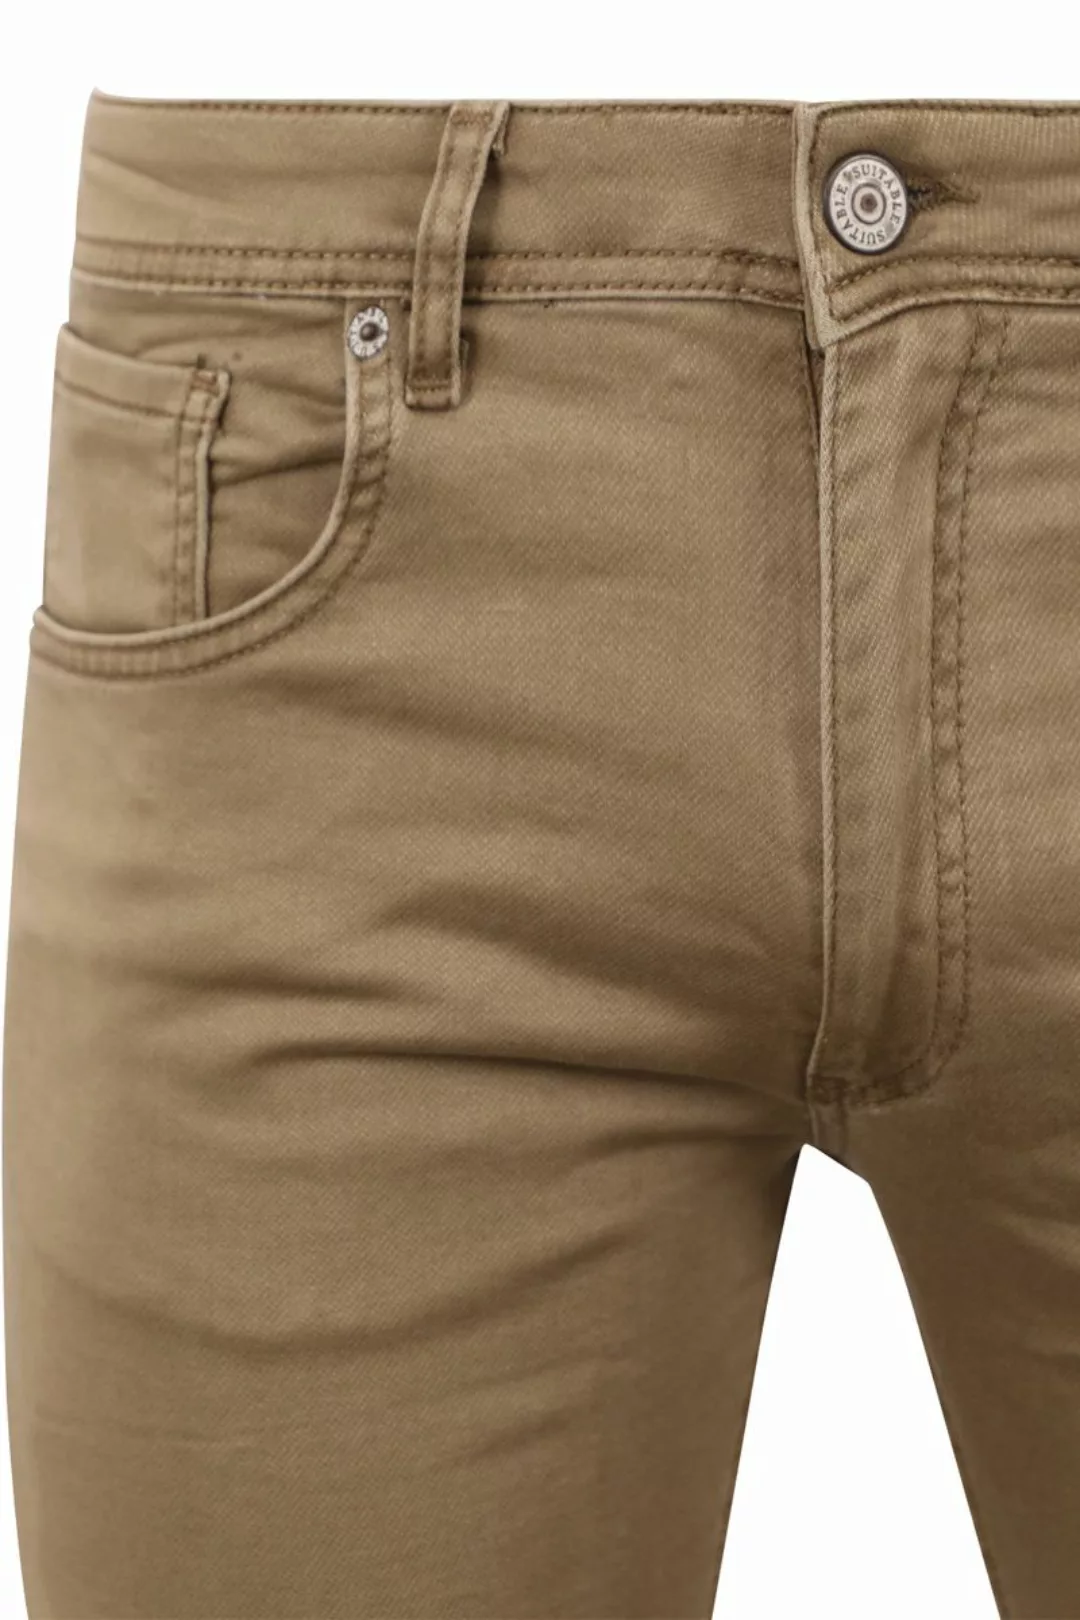 Suitable Kant Jeans Khaki - Größe W 31 - L 32 günstig online kaufen